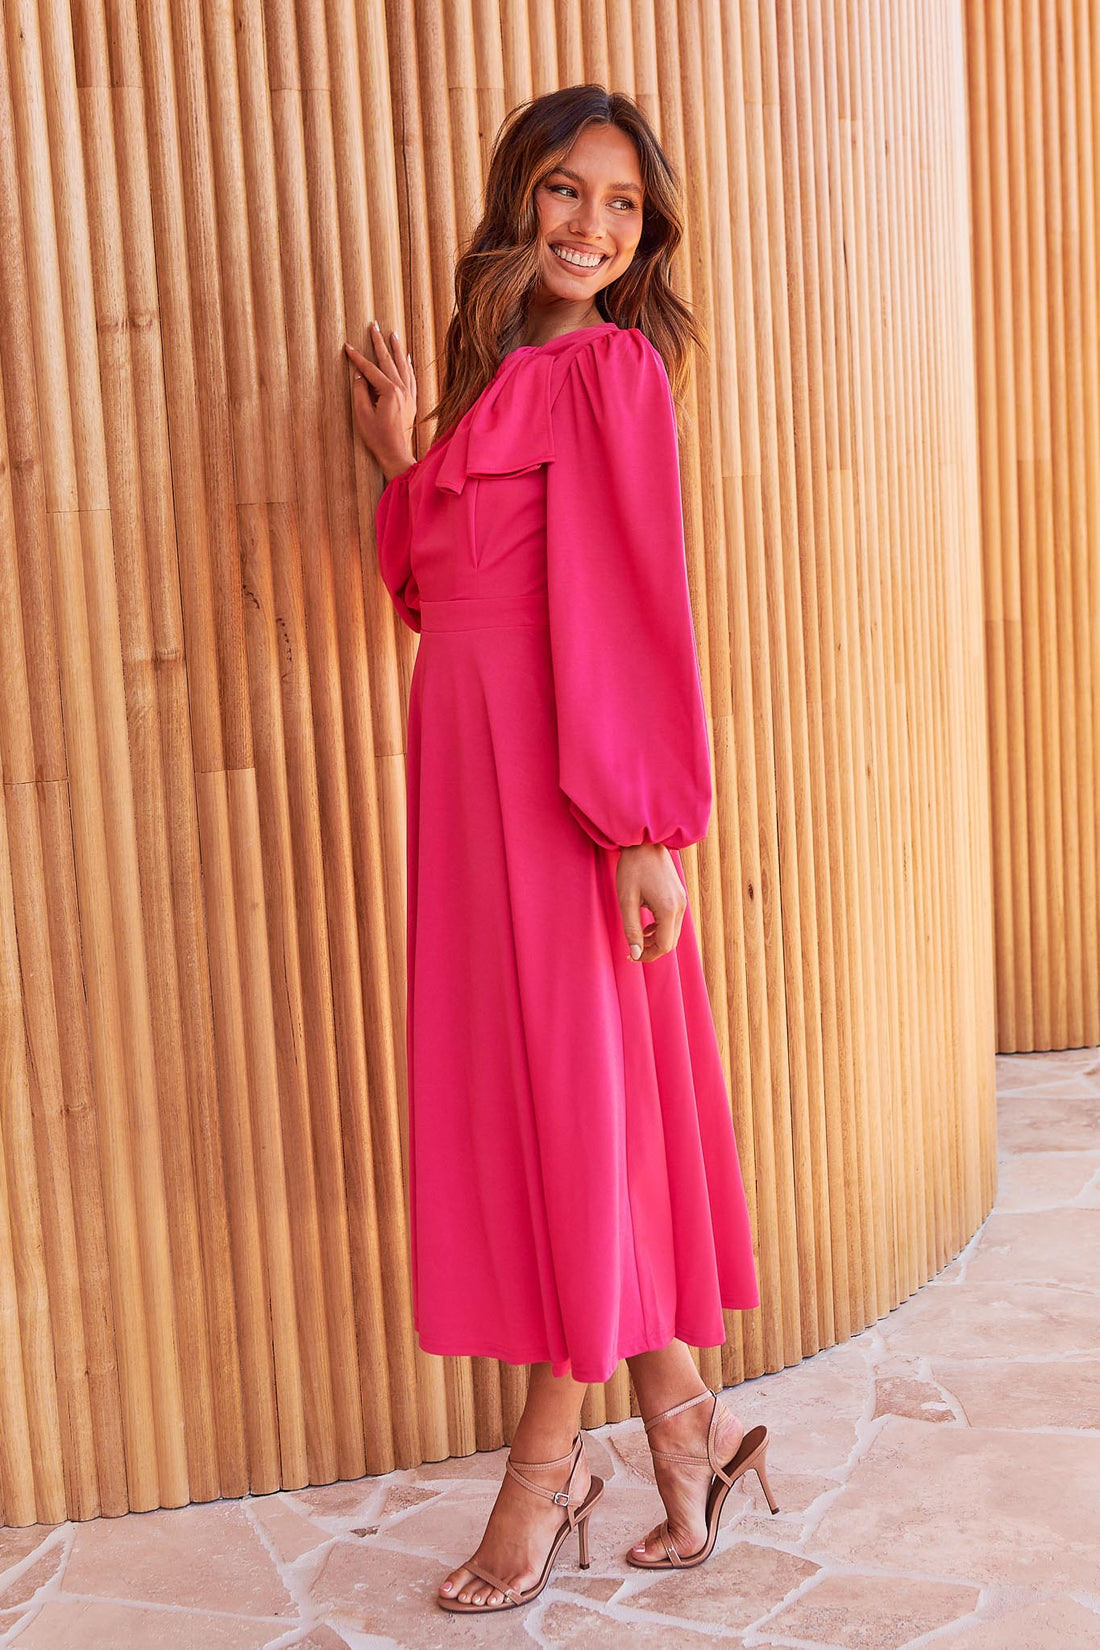 Kate Bow Shoulder Dress - Pink - FINAL SALE